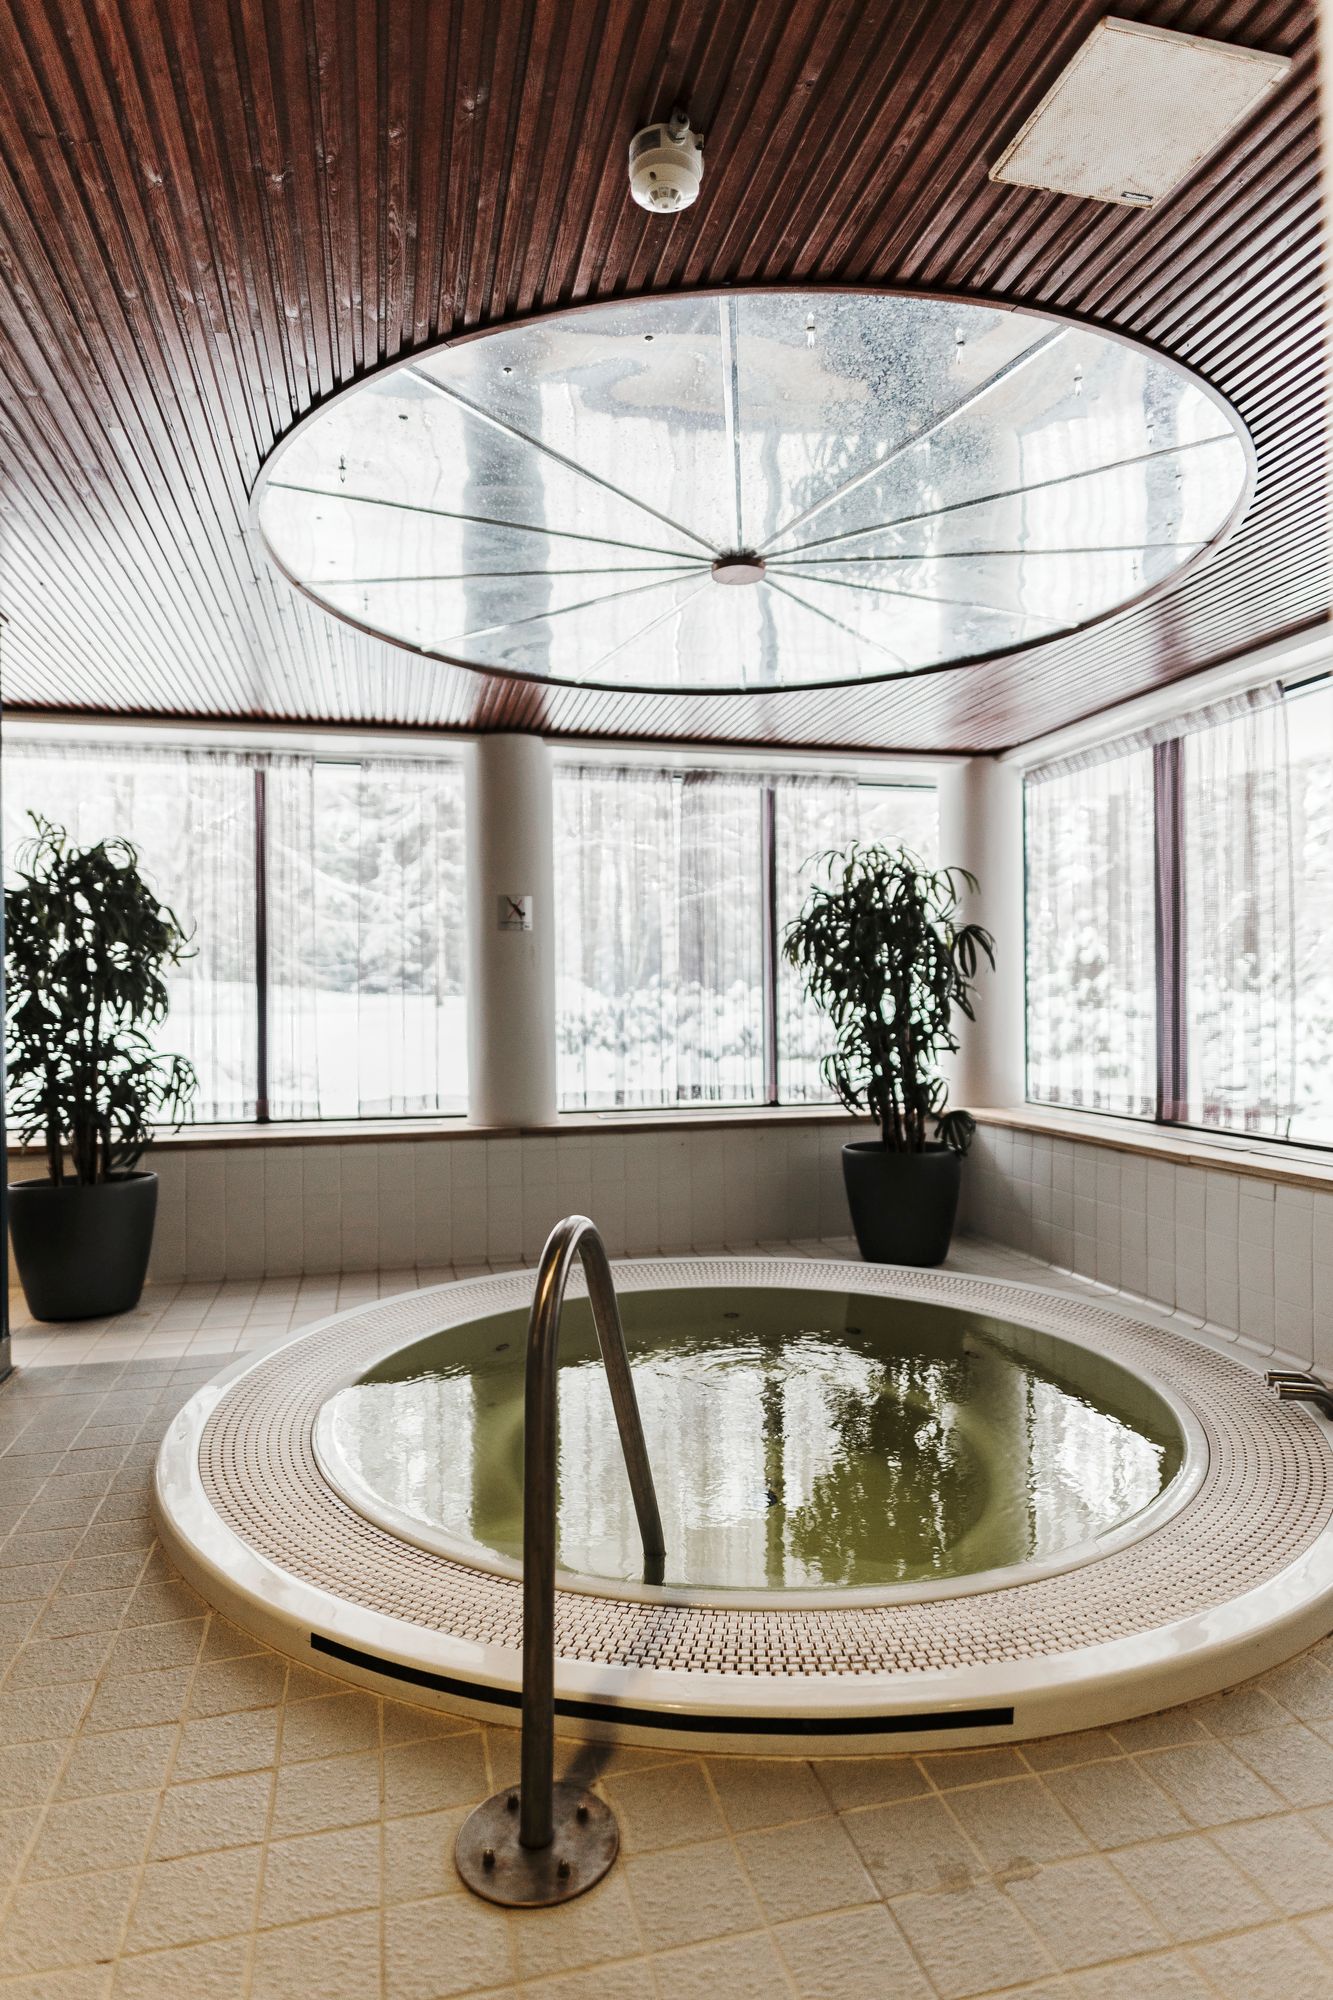 Valtionhotellin vierailla on käytössään wellness-osasto, jossa voi saunoa ja rentoutua. © Jani Kautto